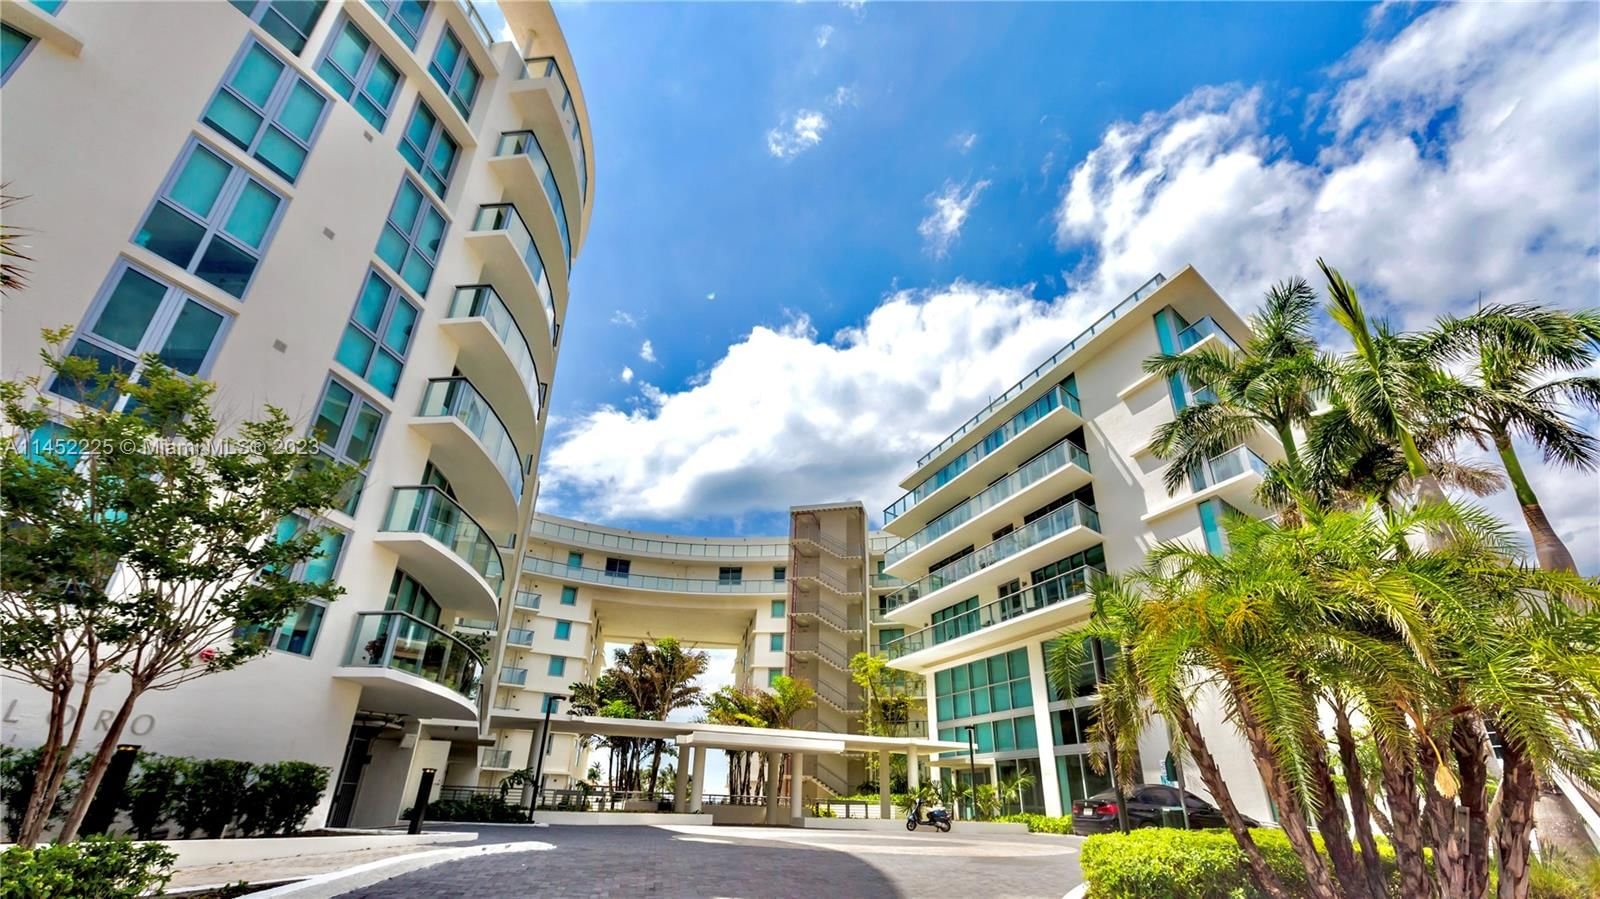 Real estate property located at 6620 Indian Creek Dr #518, Miami-Dade County, PELORO CONDOMINIUM, Miami Beach, FL